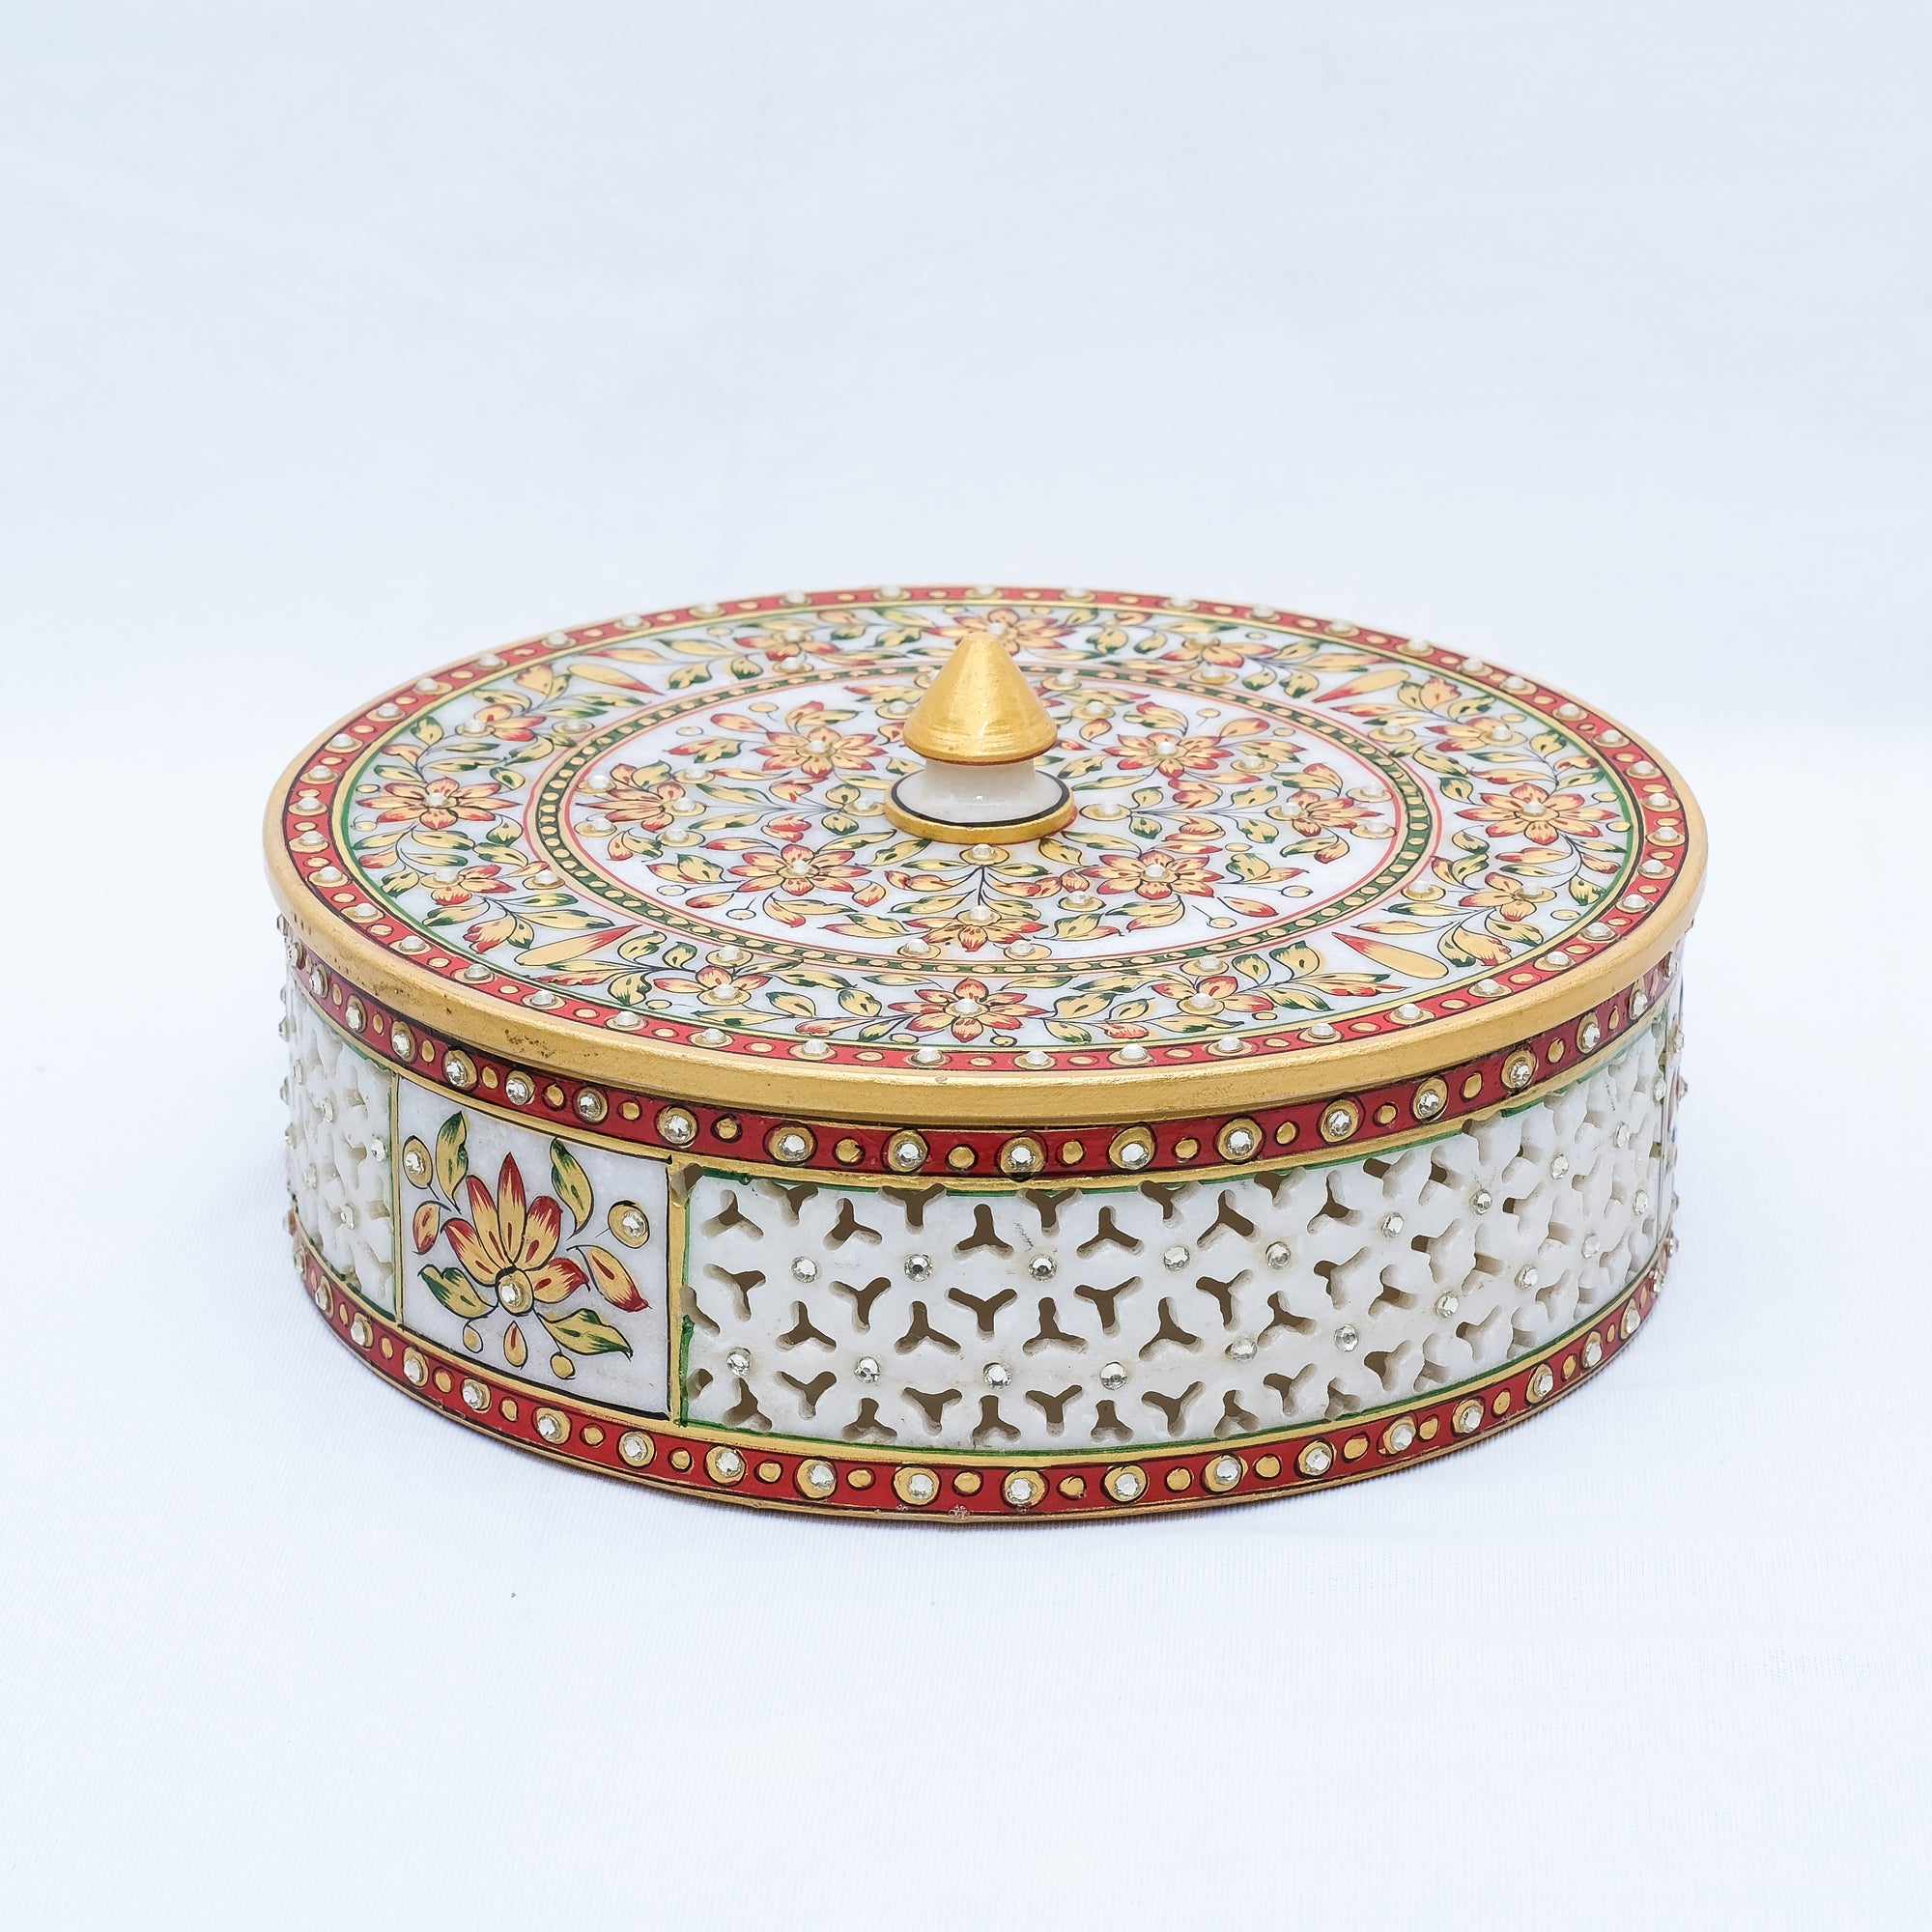 Marble Handpainted Jewellery Box Round Shaped Minakari Jali Work Jewellery Box